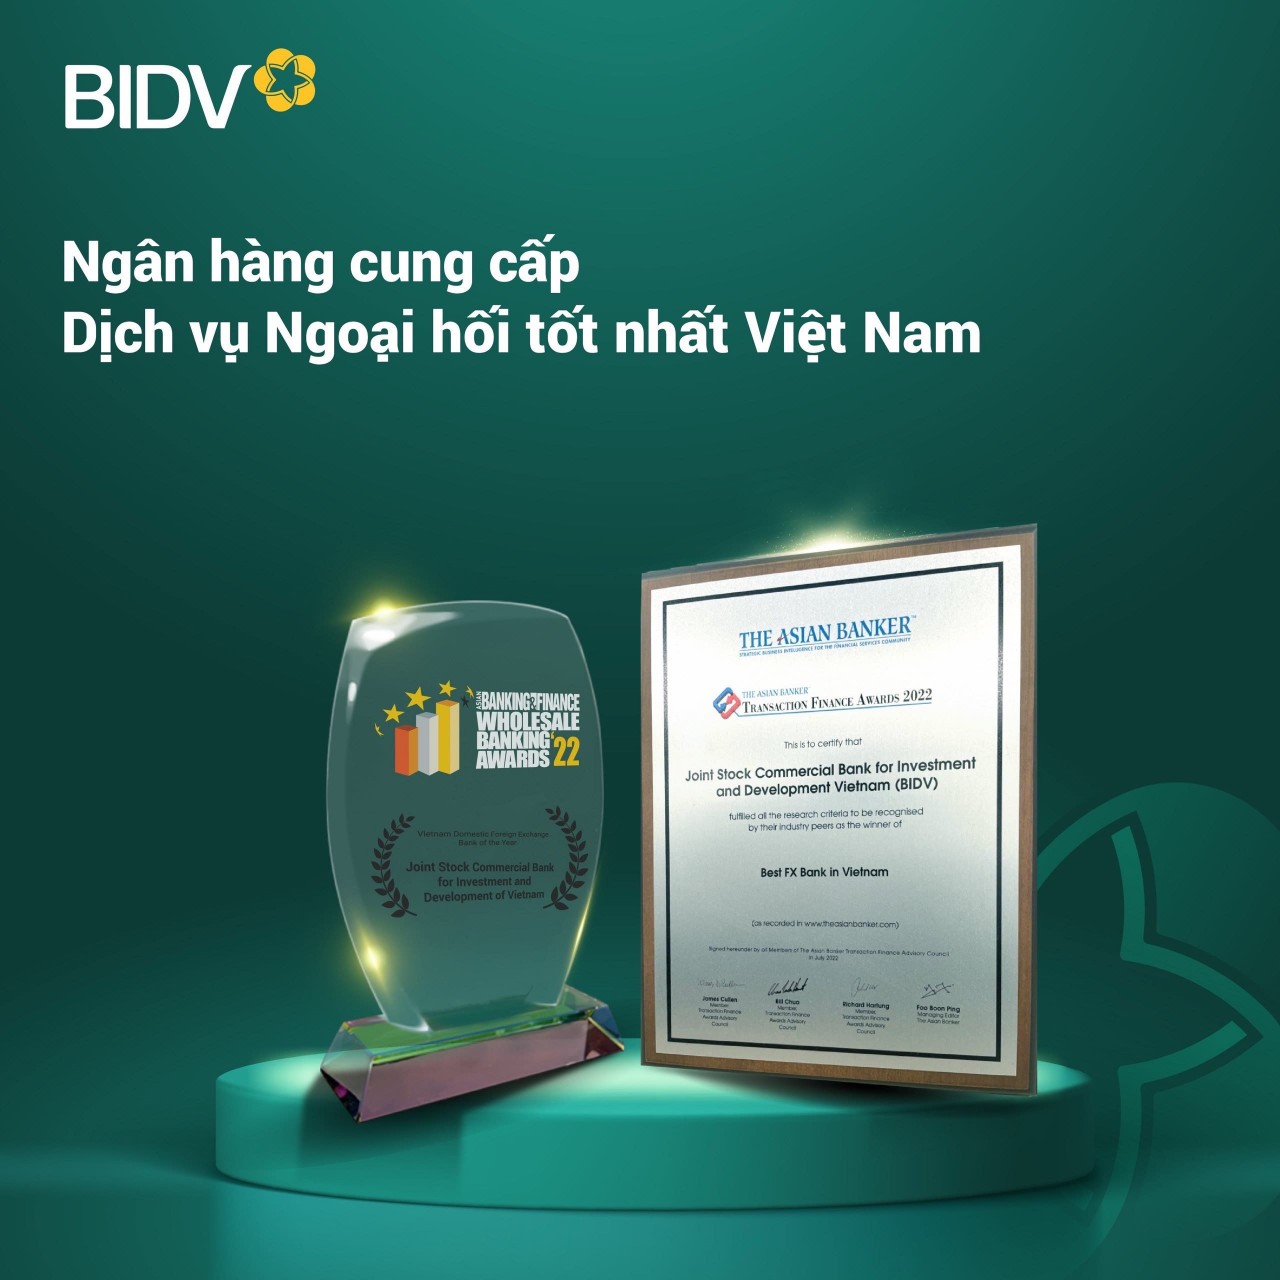 Ngân hàng nào cung cấp dịch vụ ngoại hối tốt nhất Việt Nam?